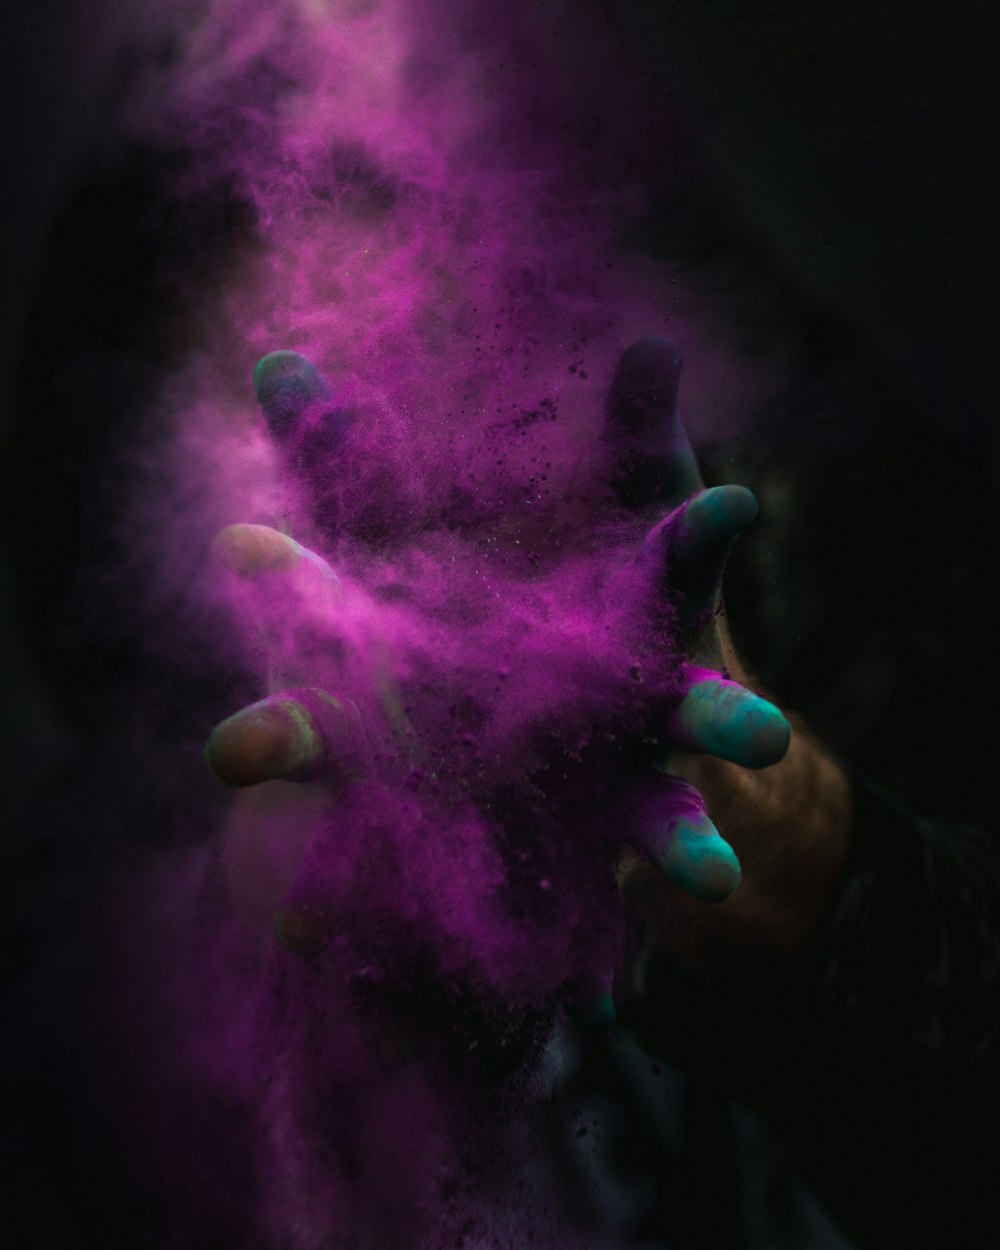 Photographie en accéléré d’une personne répandant de la poudre violette